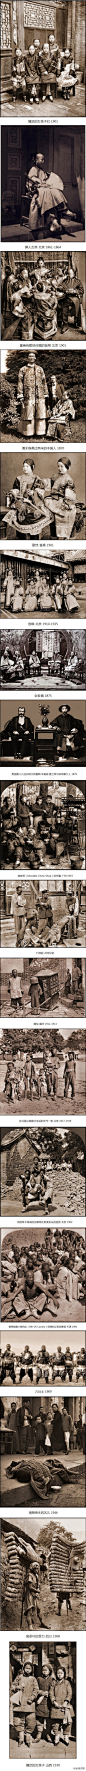 就爱摄影让人震撼的100年前中国的好照片